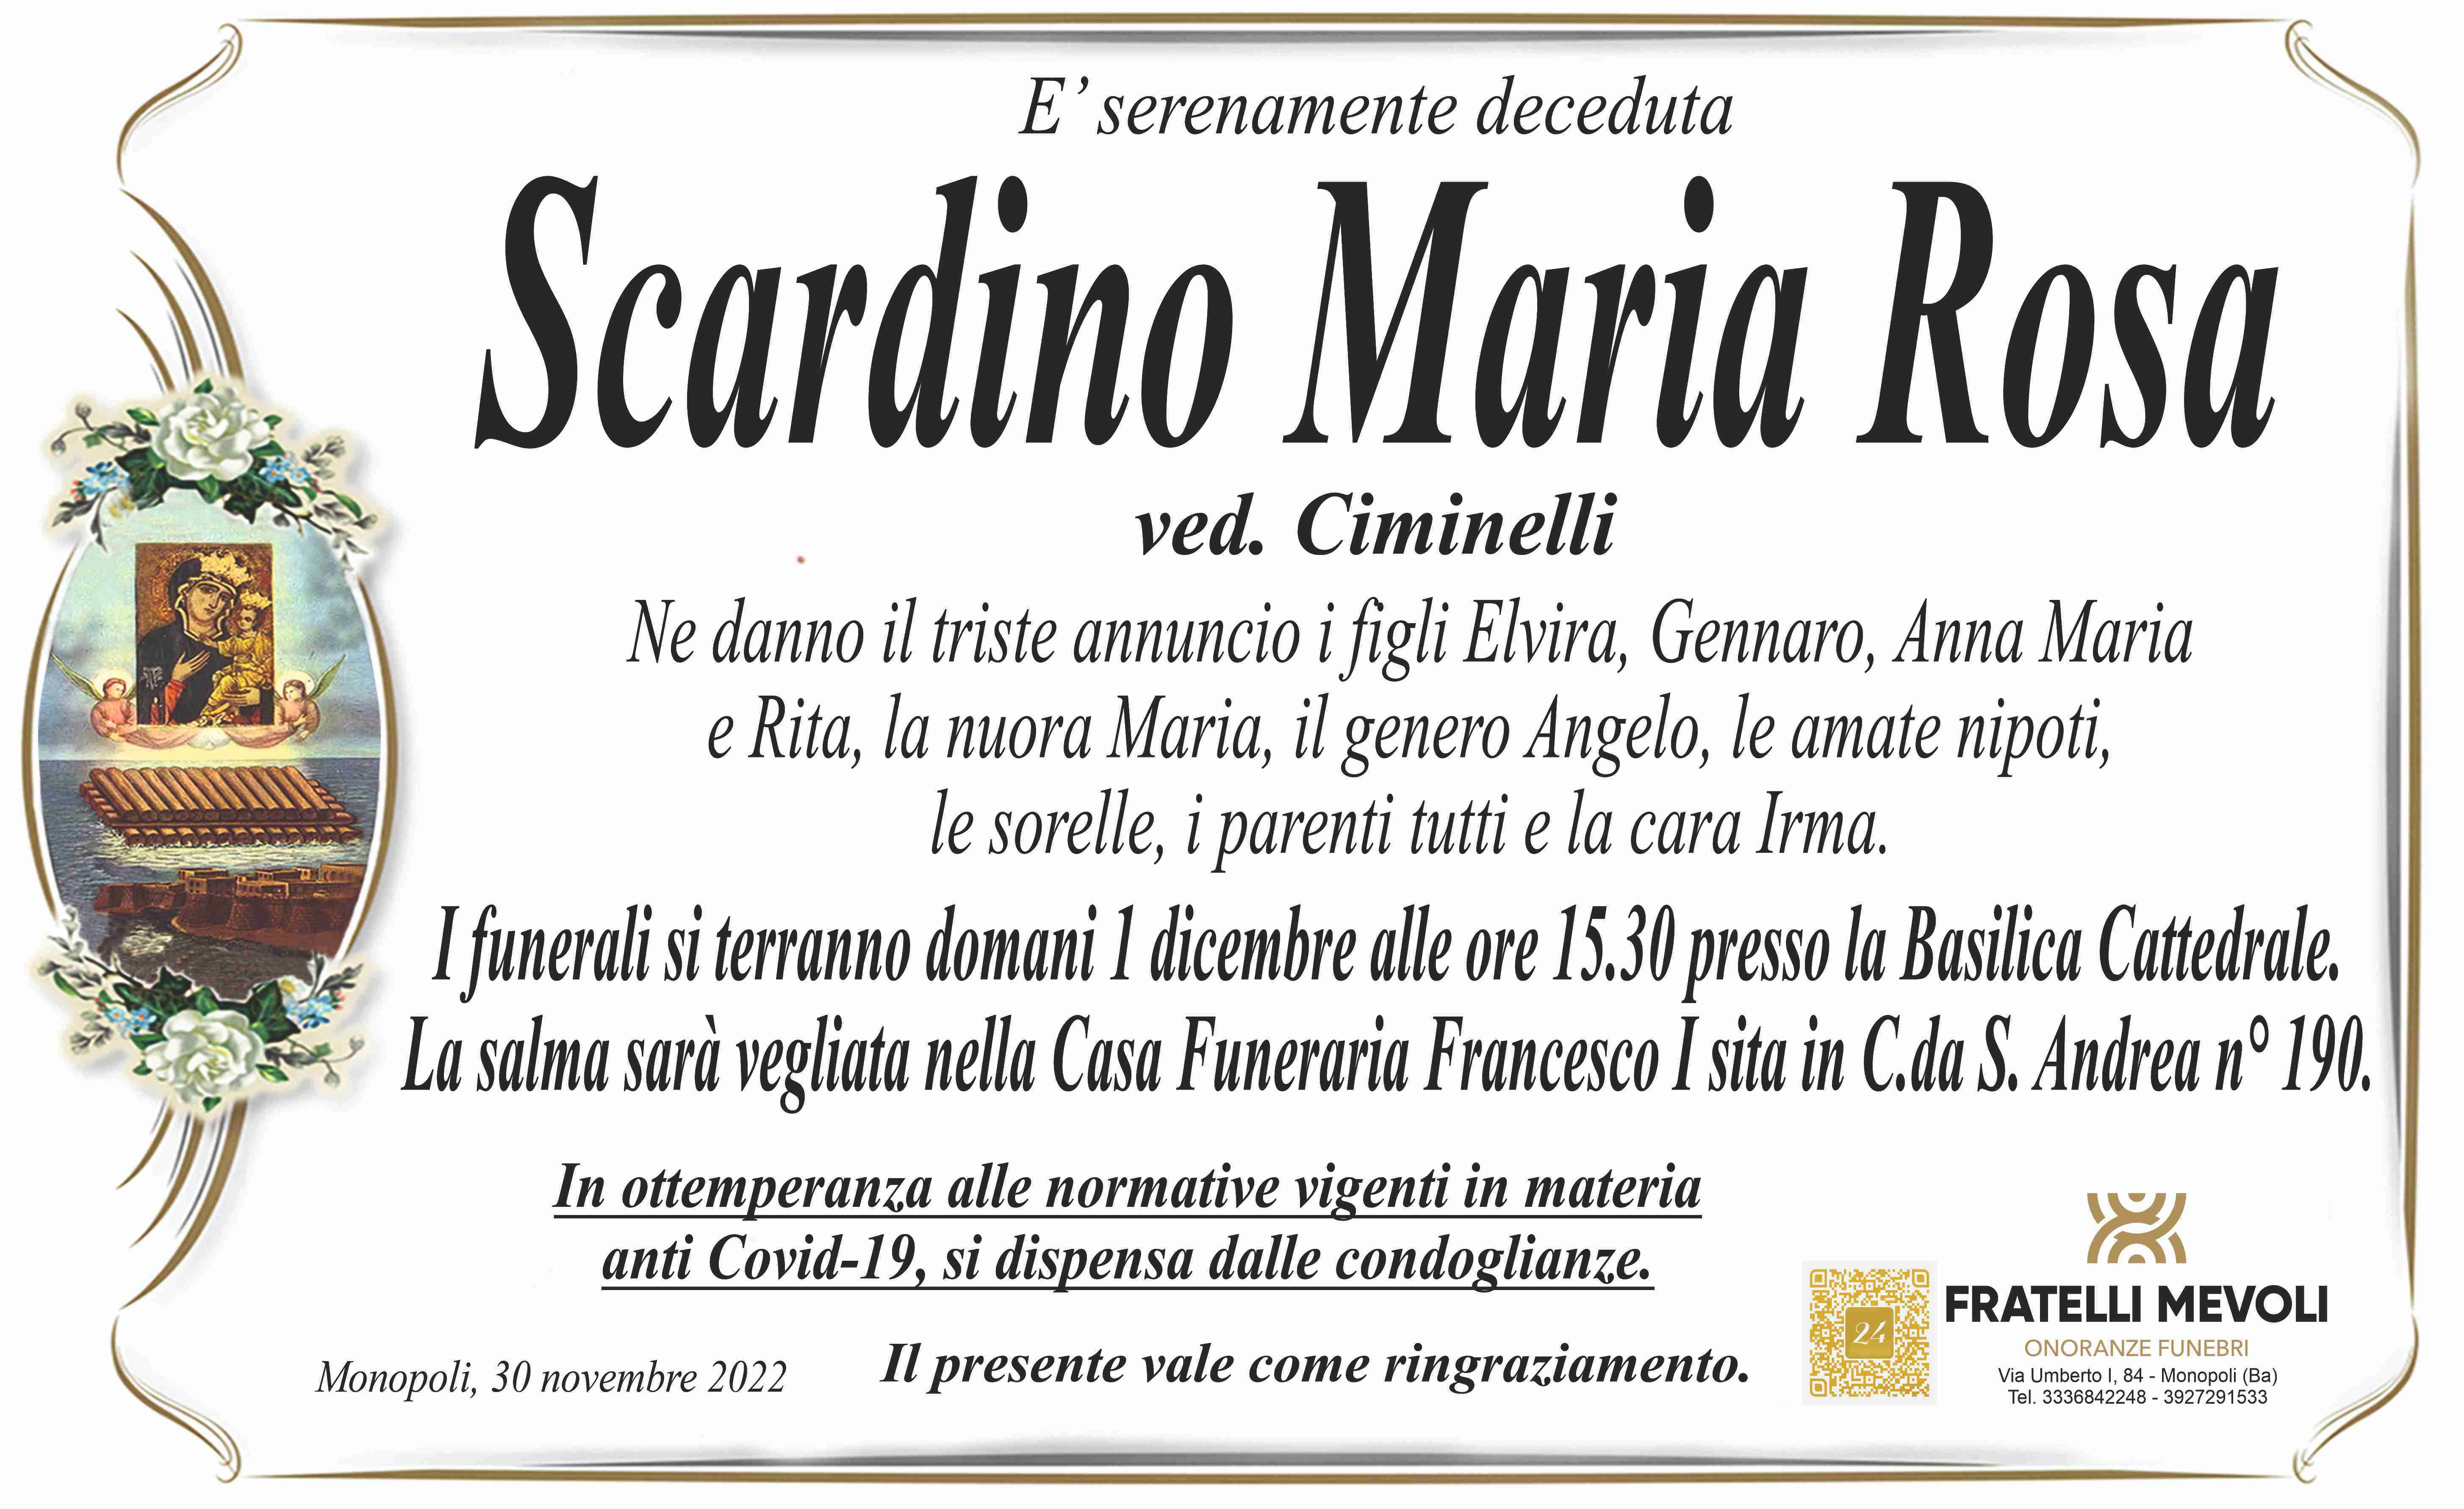 Maria Rosa Scardino